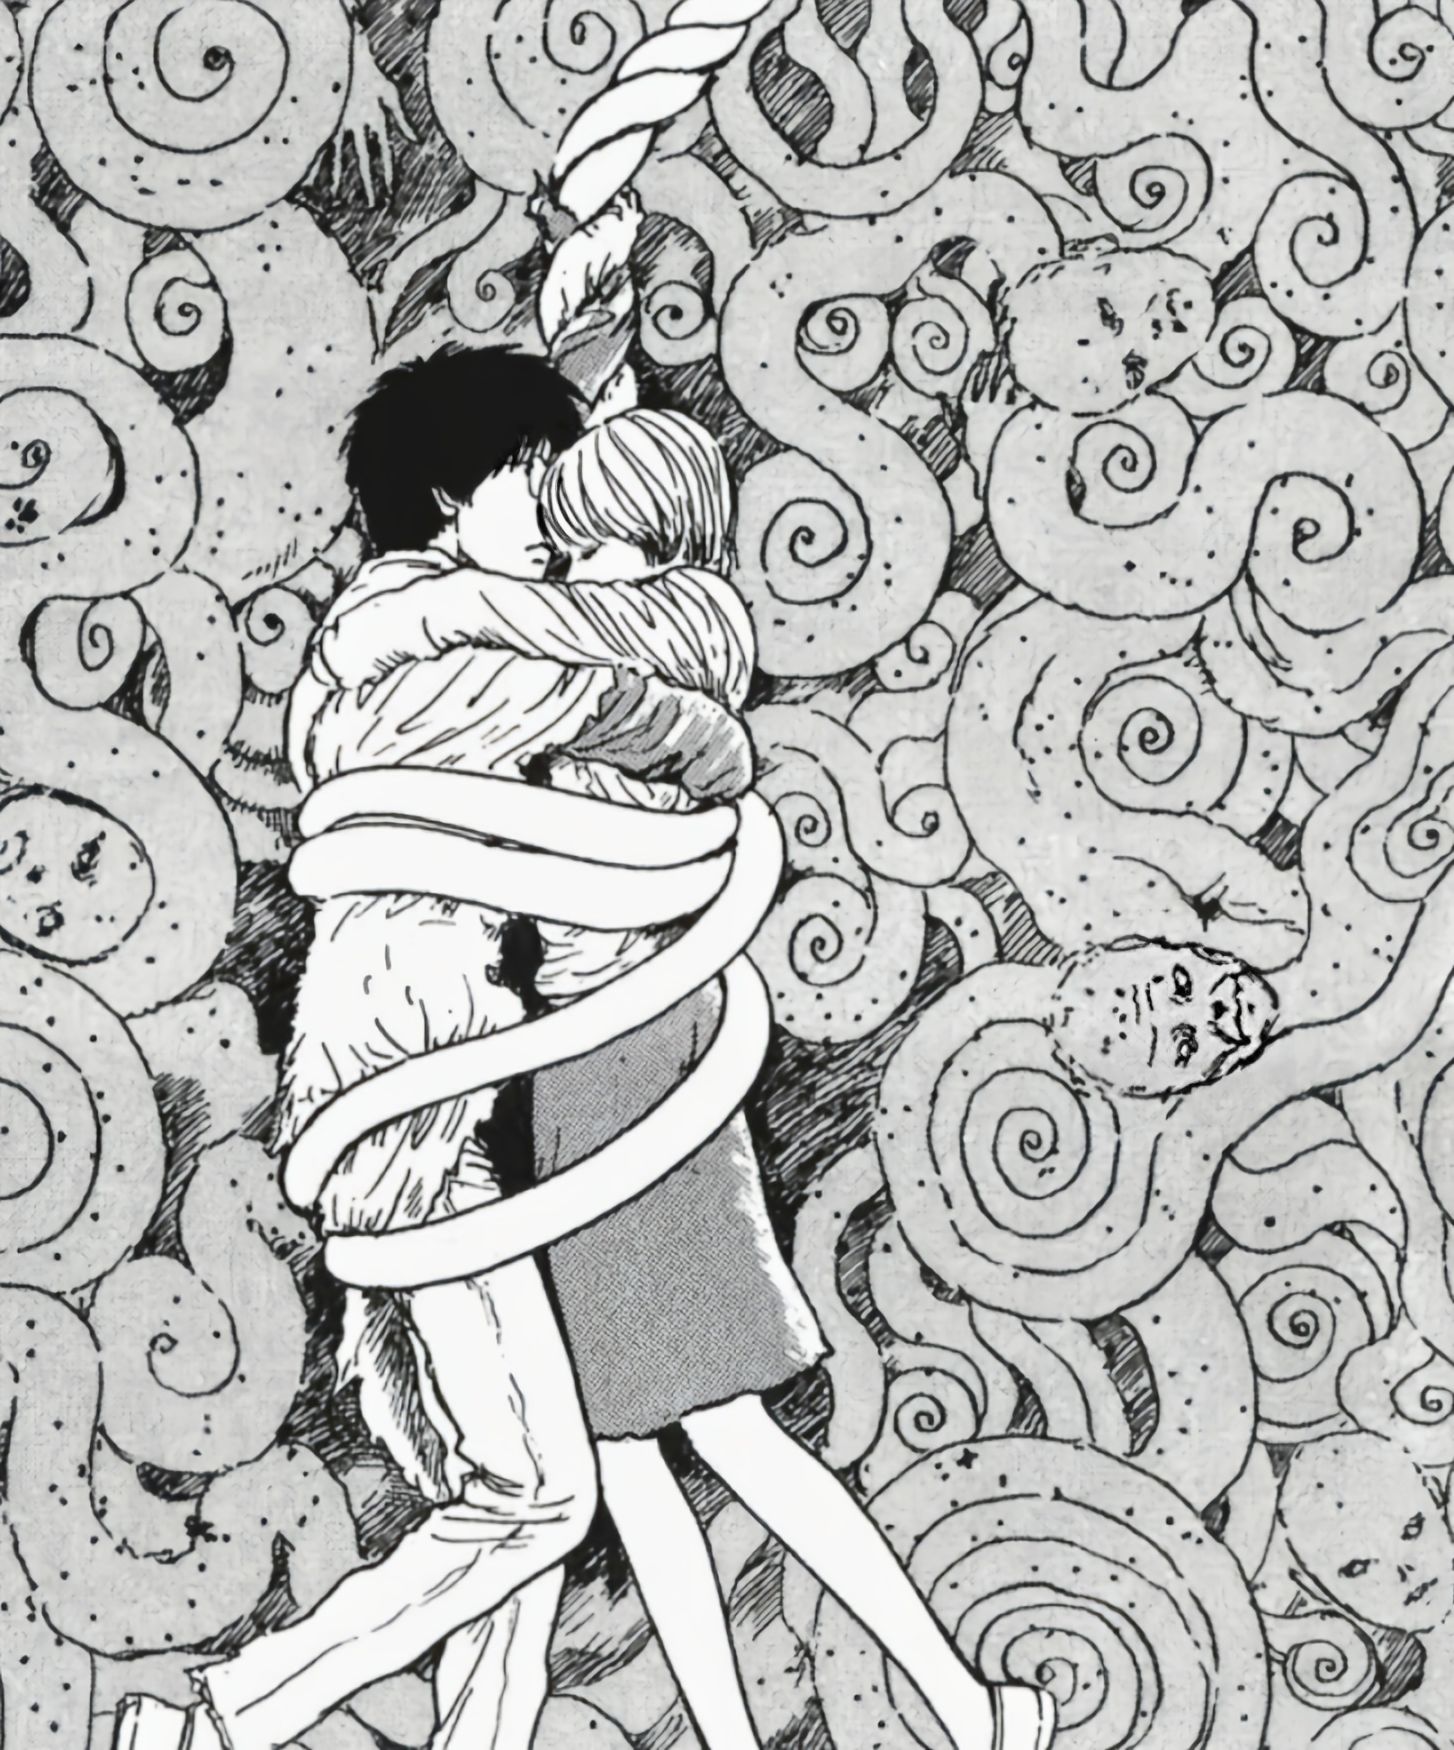 【影視動漫】伊藤潤二的頂級恐怖漫畫《漩渦》-第18張